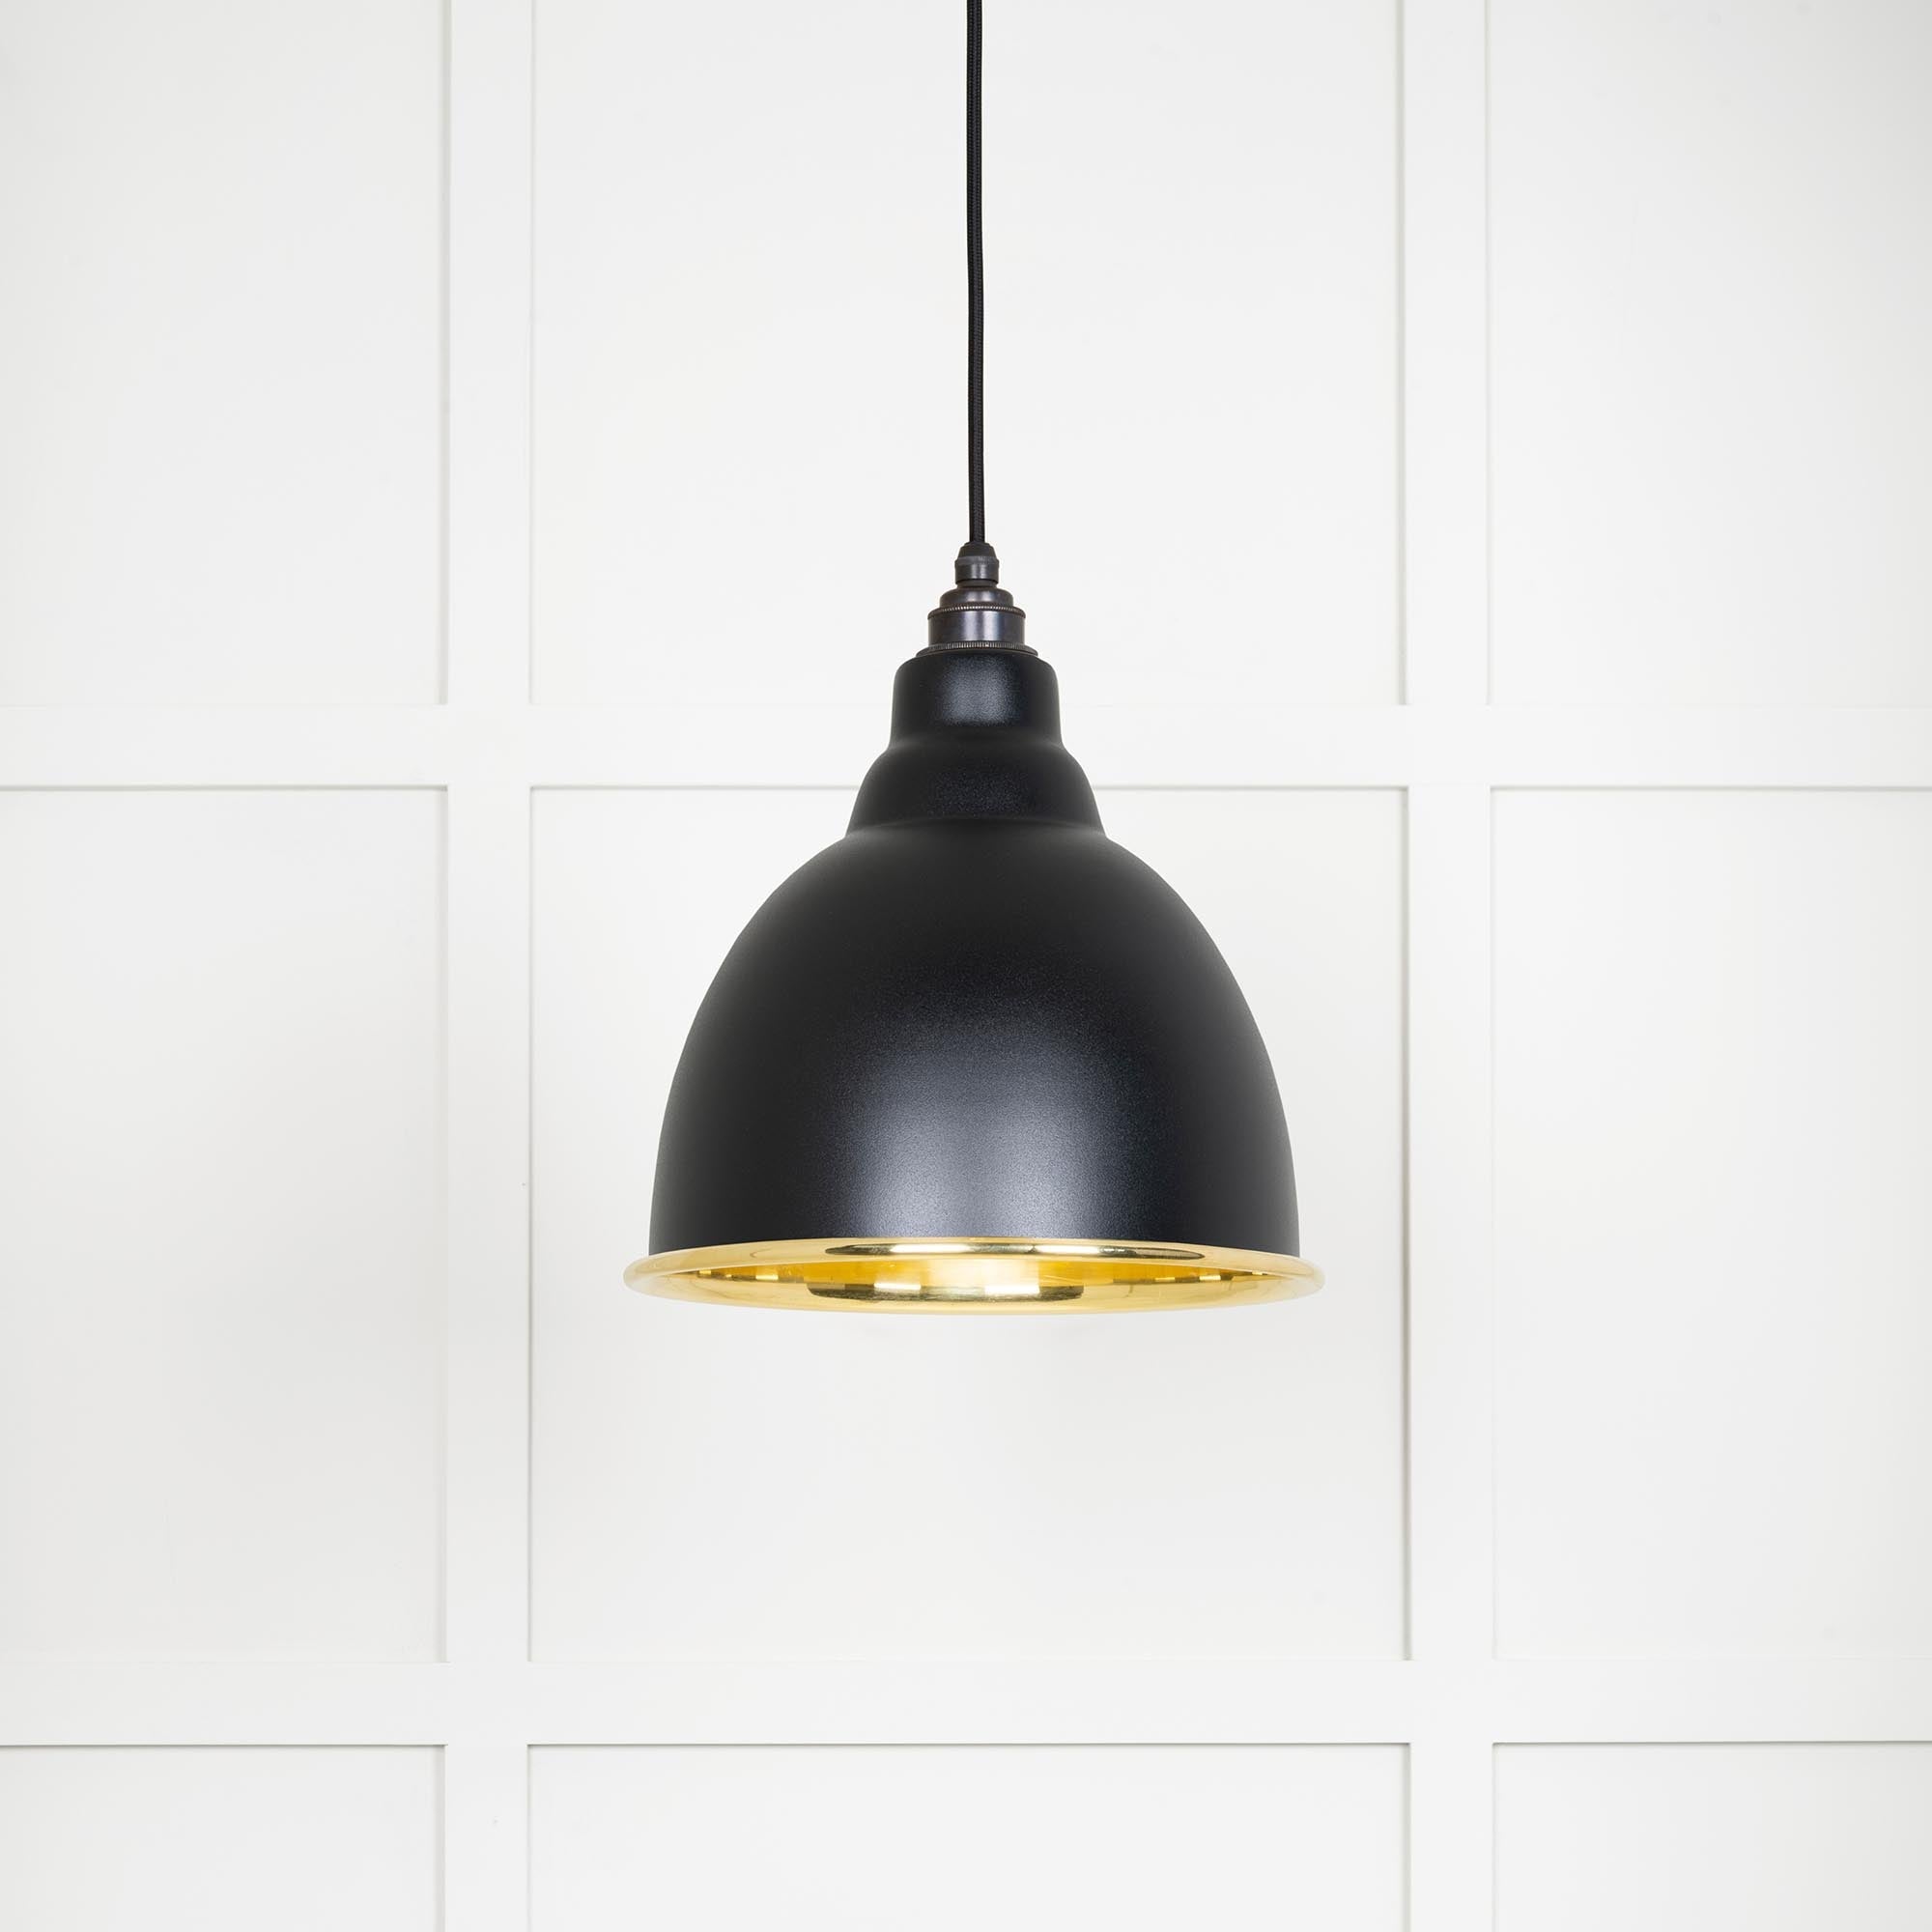 Image of Brindley Ceiling Light in Elan Black